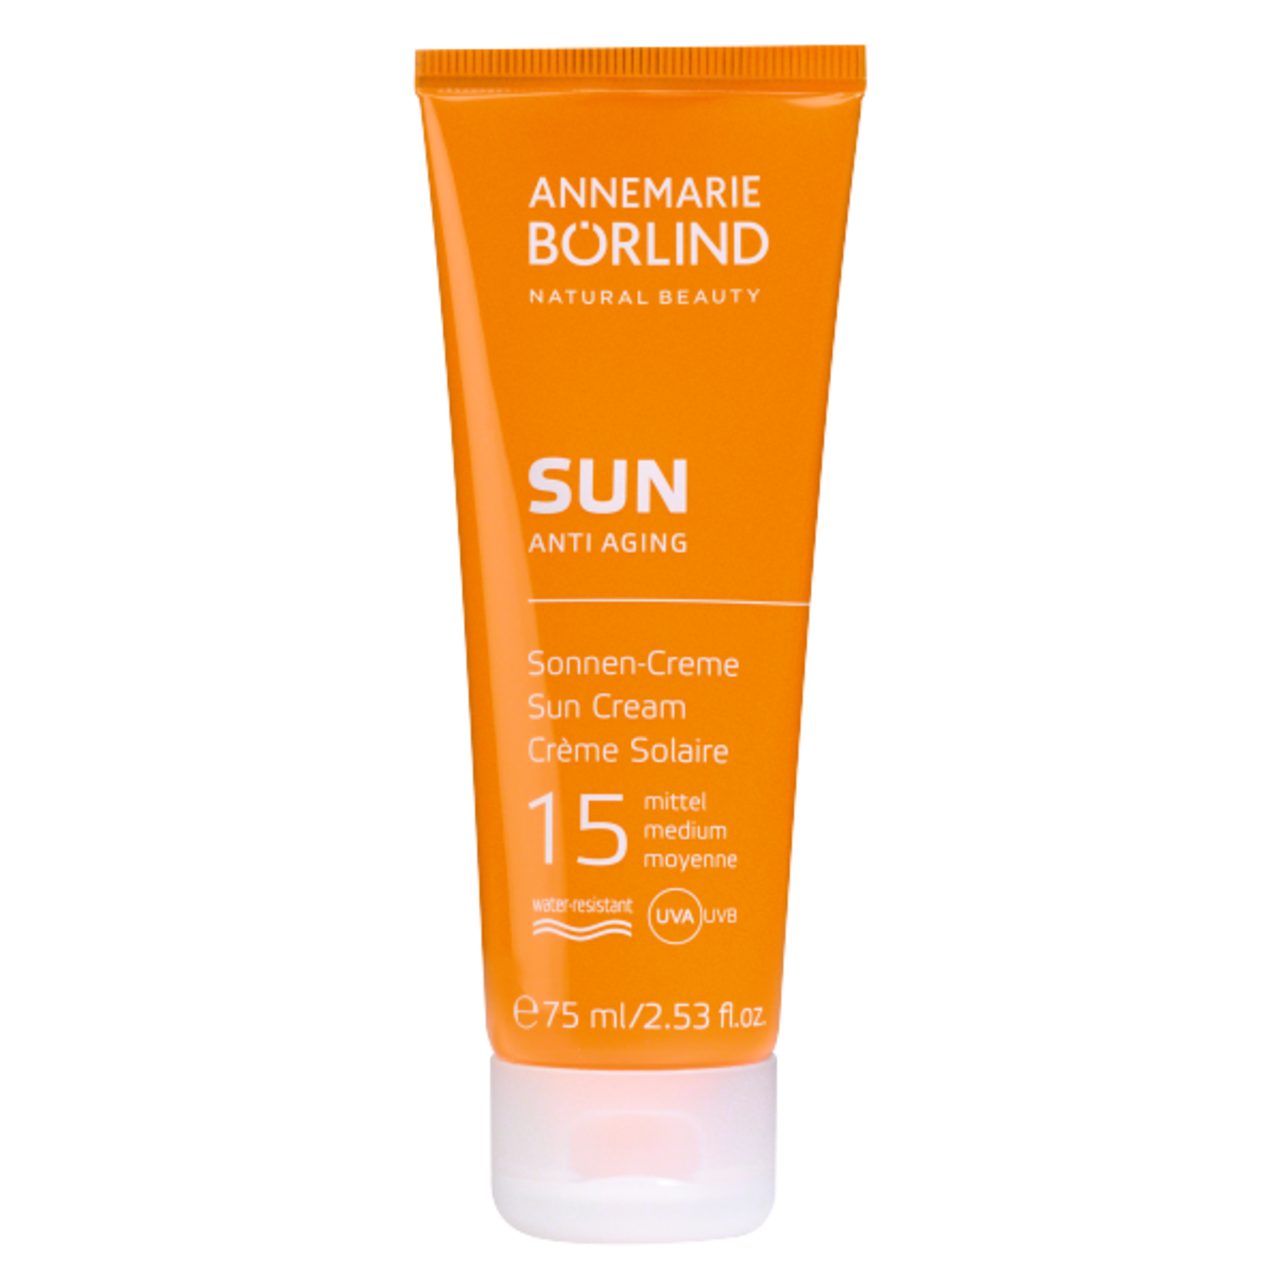 ANNEMARIE BÖRLIND Sonnenschutzcreme Sun Anti Aging Sonnen-Creme LSF 15